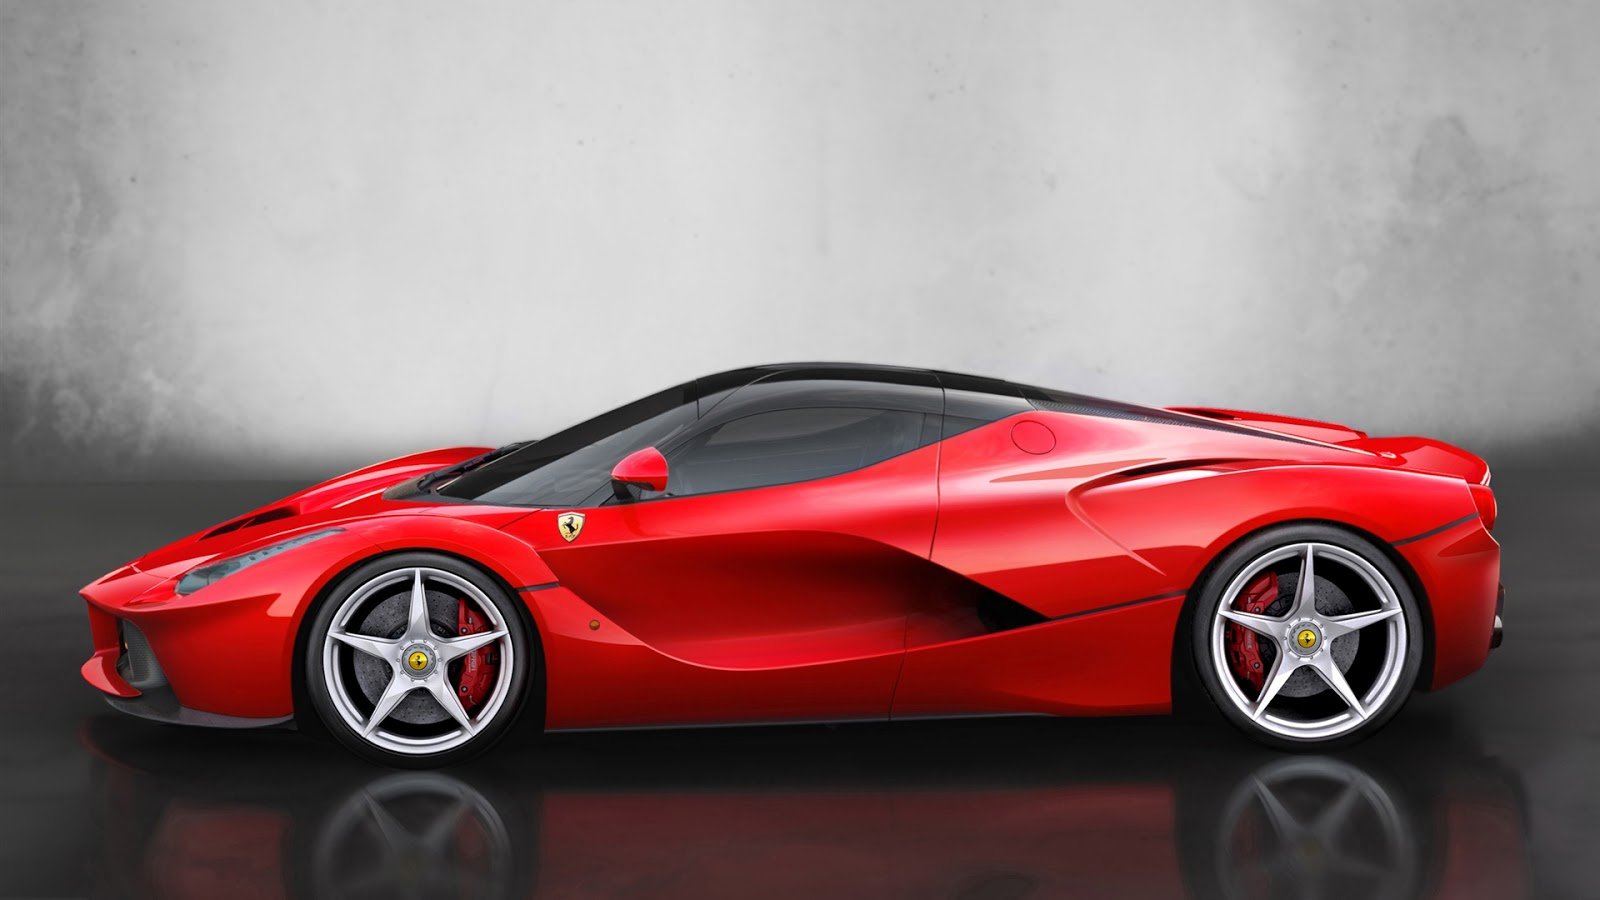 Ferrari Red Supercar Full HD Desktop Wallpapers 1080p 1600x900